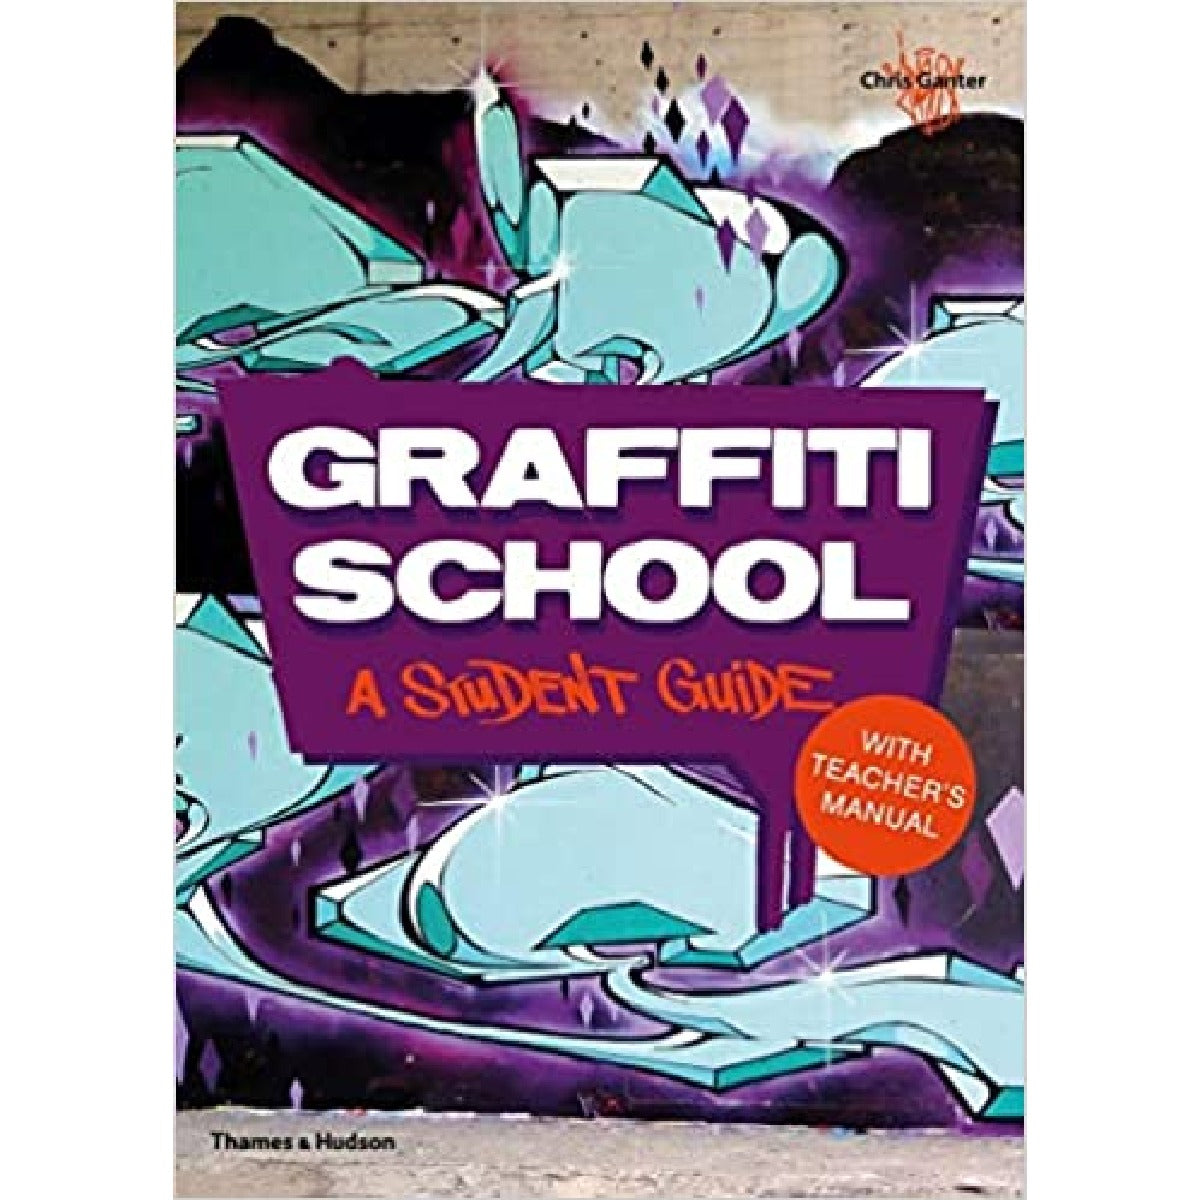 Graffiti School: A Student Guide And Teachers Manual [Book]